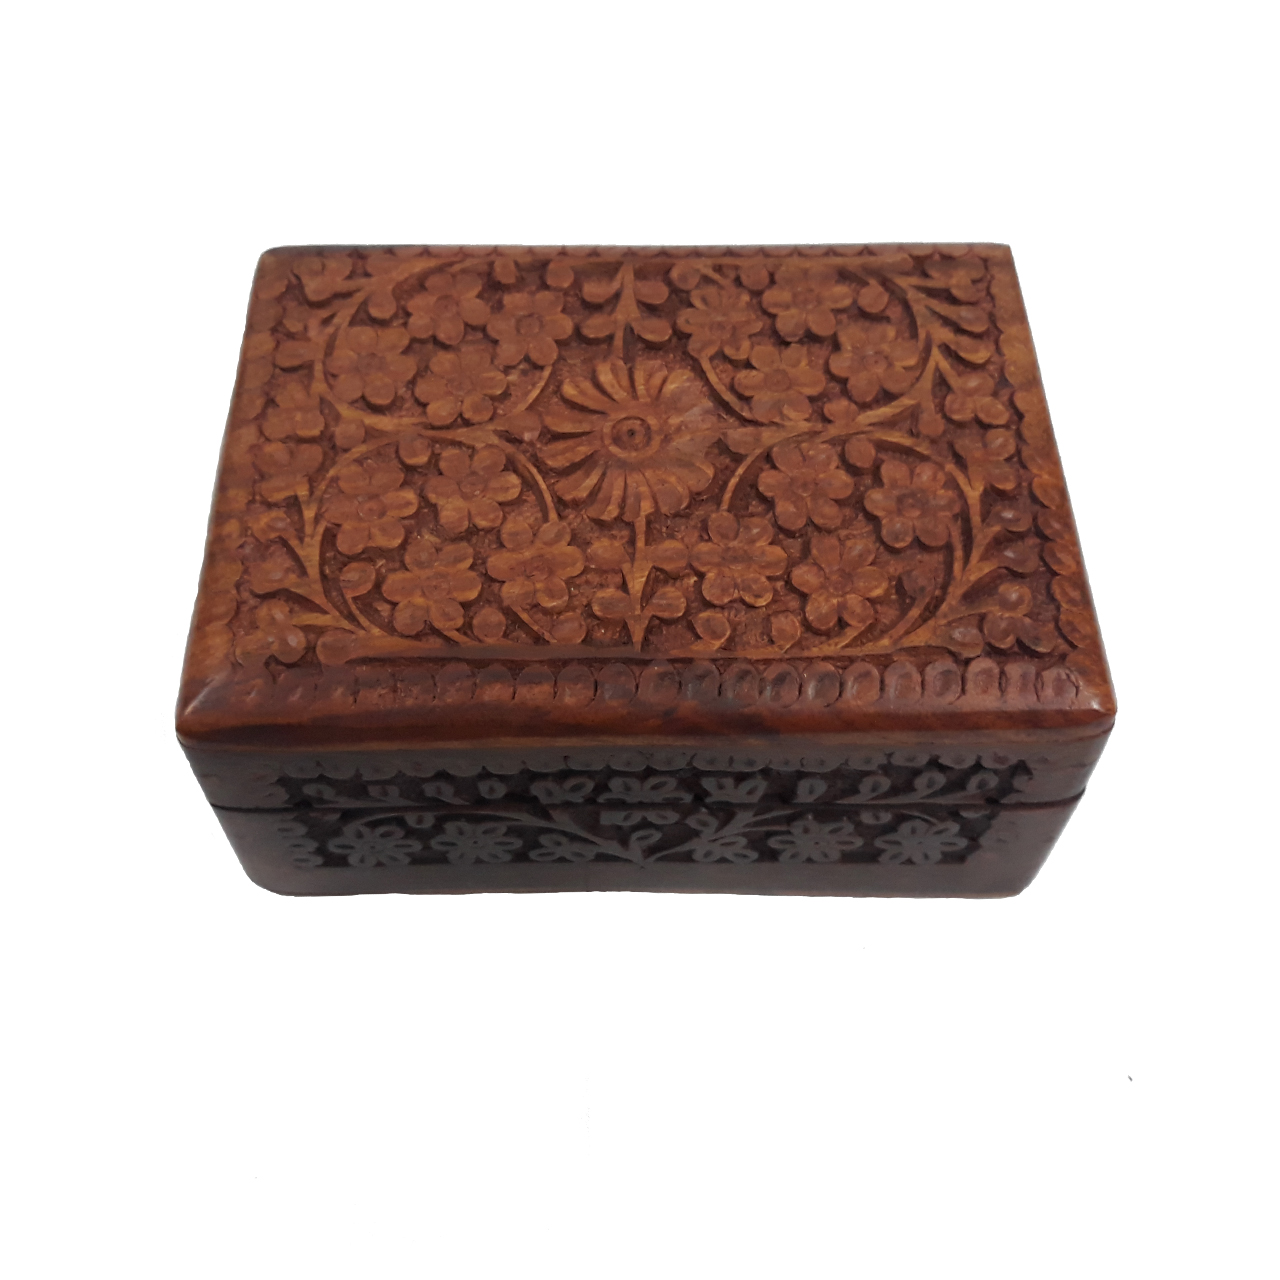 جعبه چوبی منبت کاری هندی مدل 1021-K